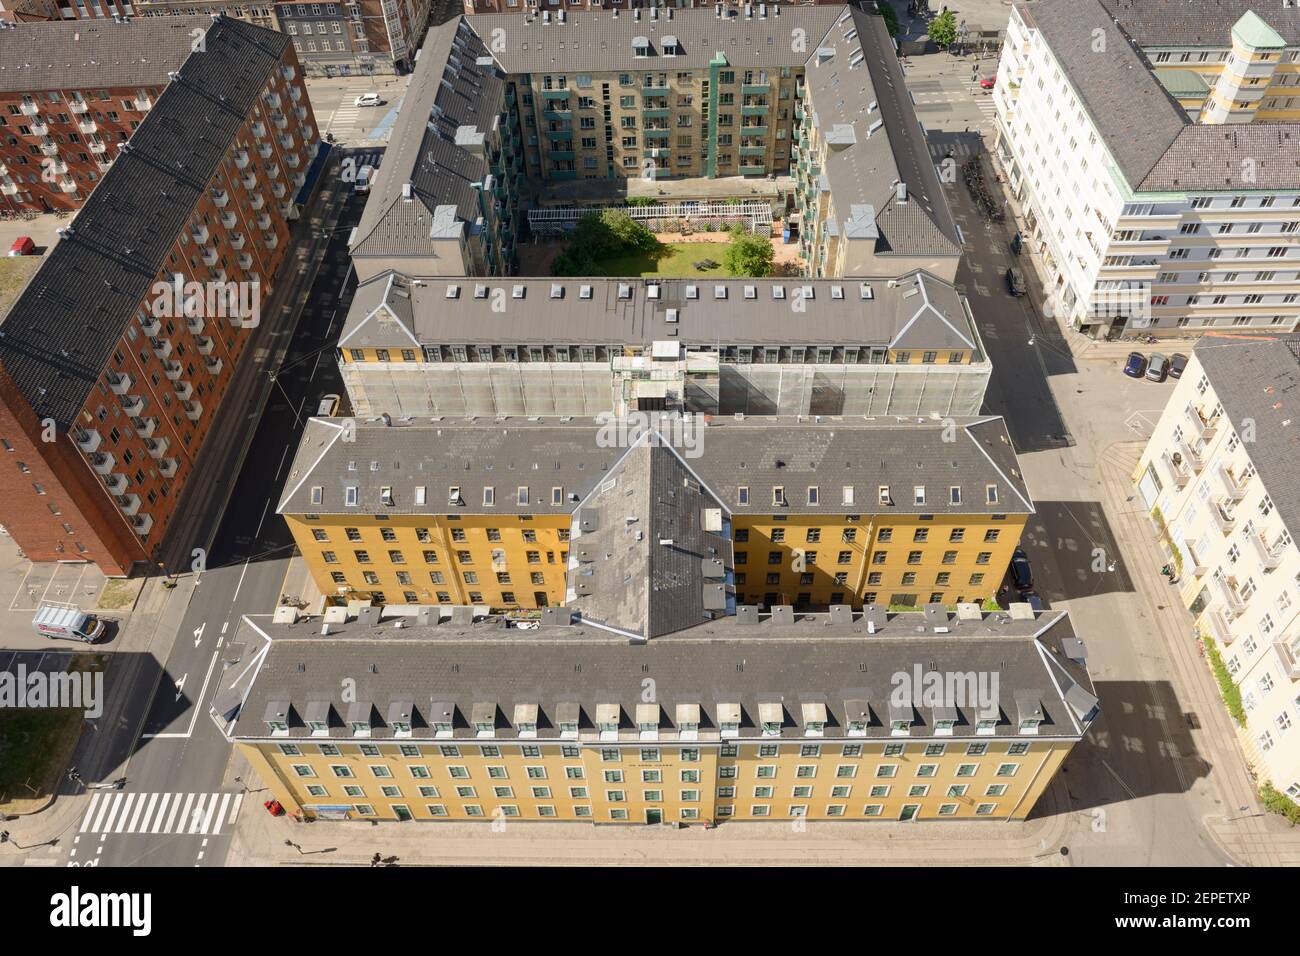 Portrait d'un complexe d'appartements dans le quartier de Christianshavn à Copenhague, Danemark. Banque D'Images